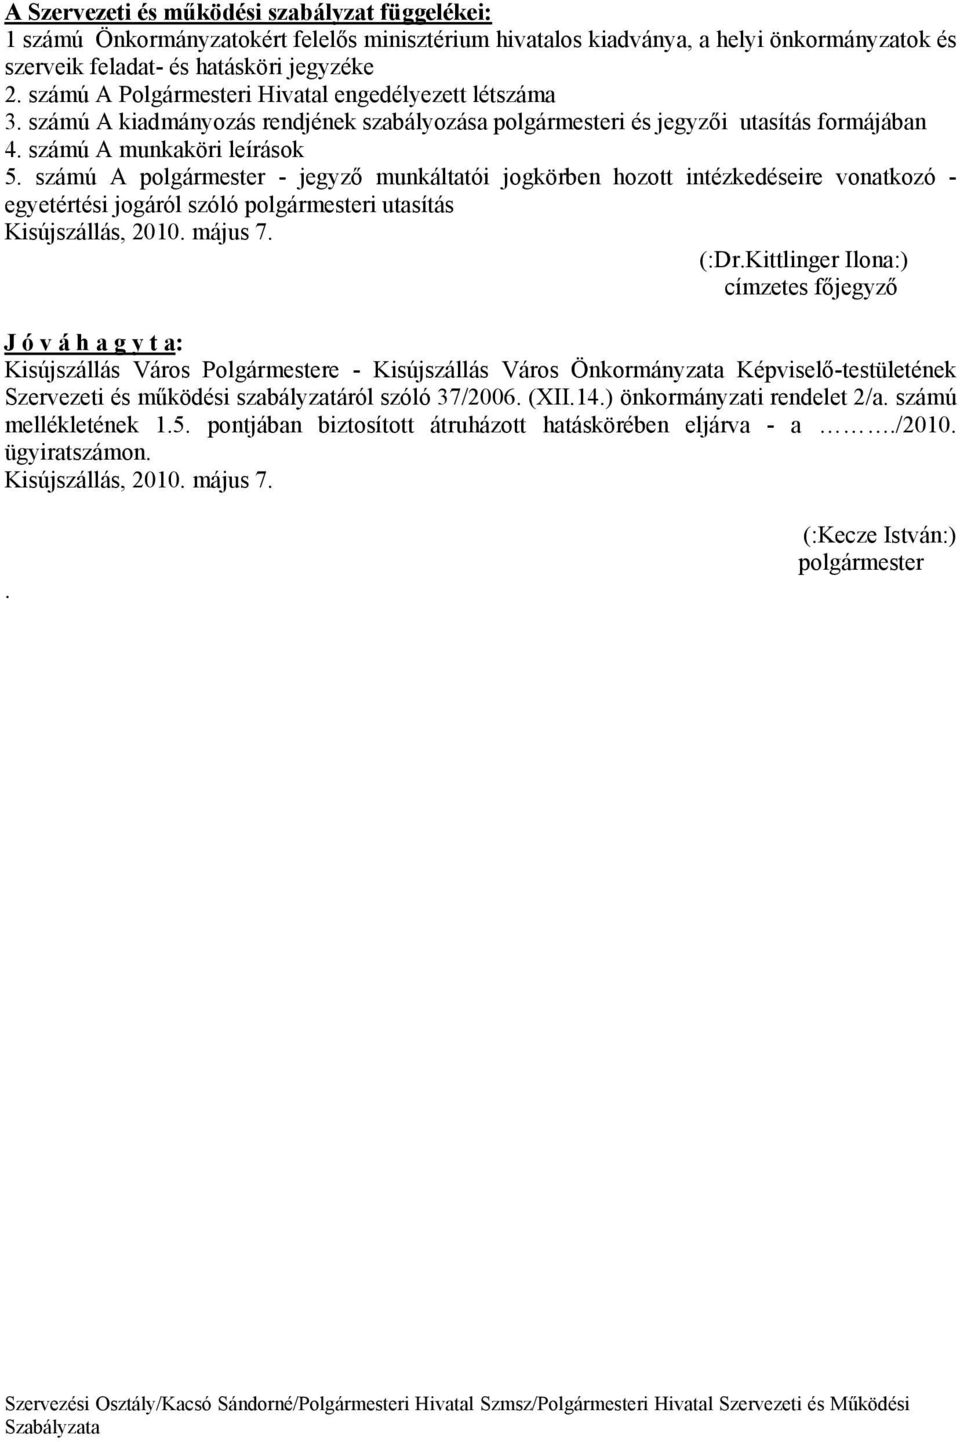 szmú A polgrmester - jegyző munkltatói jogkörben hozott intzkedseire vonatkozó - egyetrtsi jogról szóló polgrmesteri utasíts Kisújszlls, 2010. mjus 7. (:Dr.